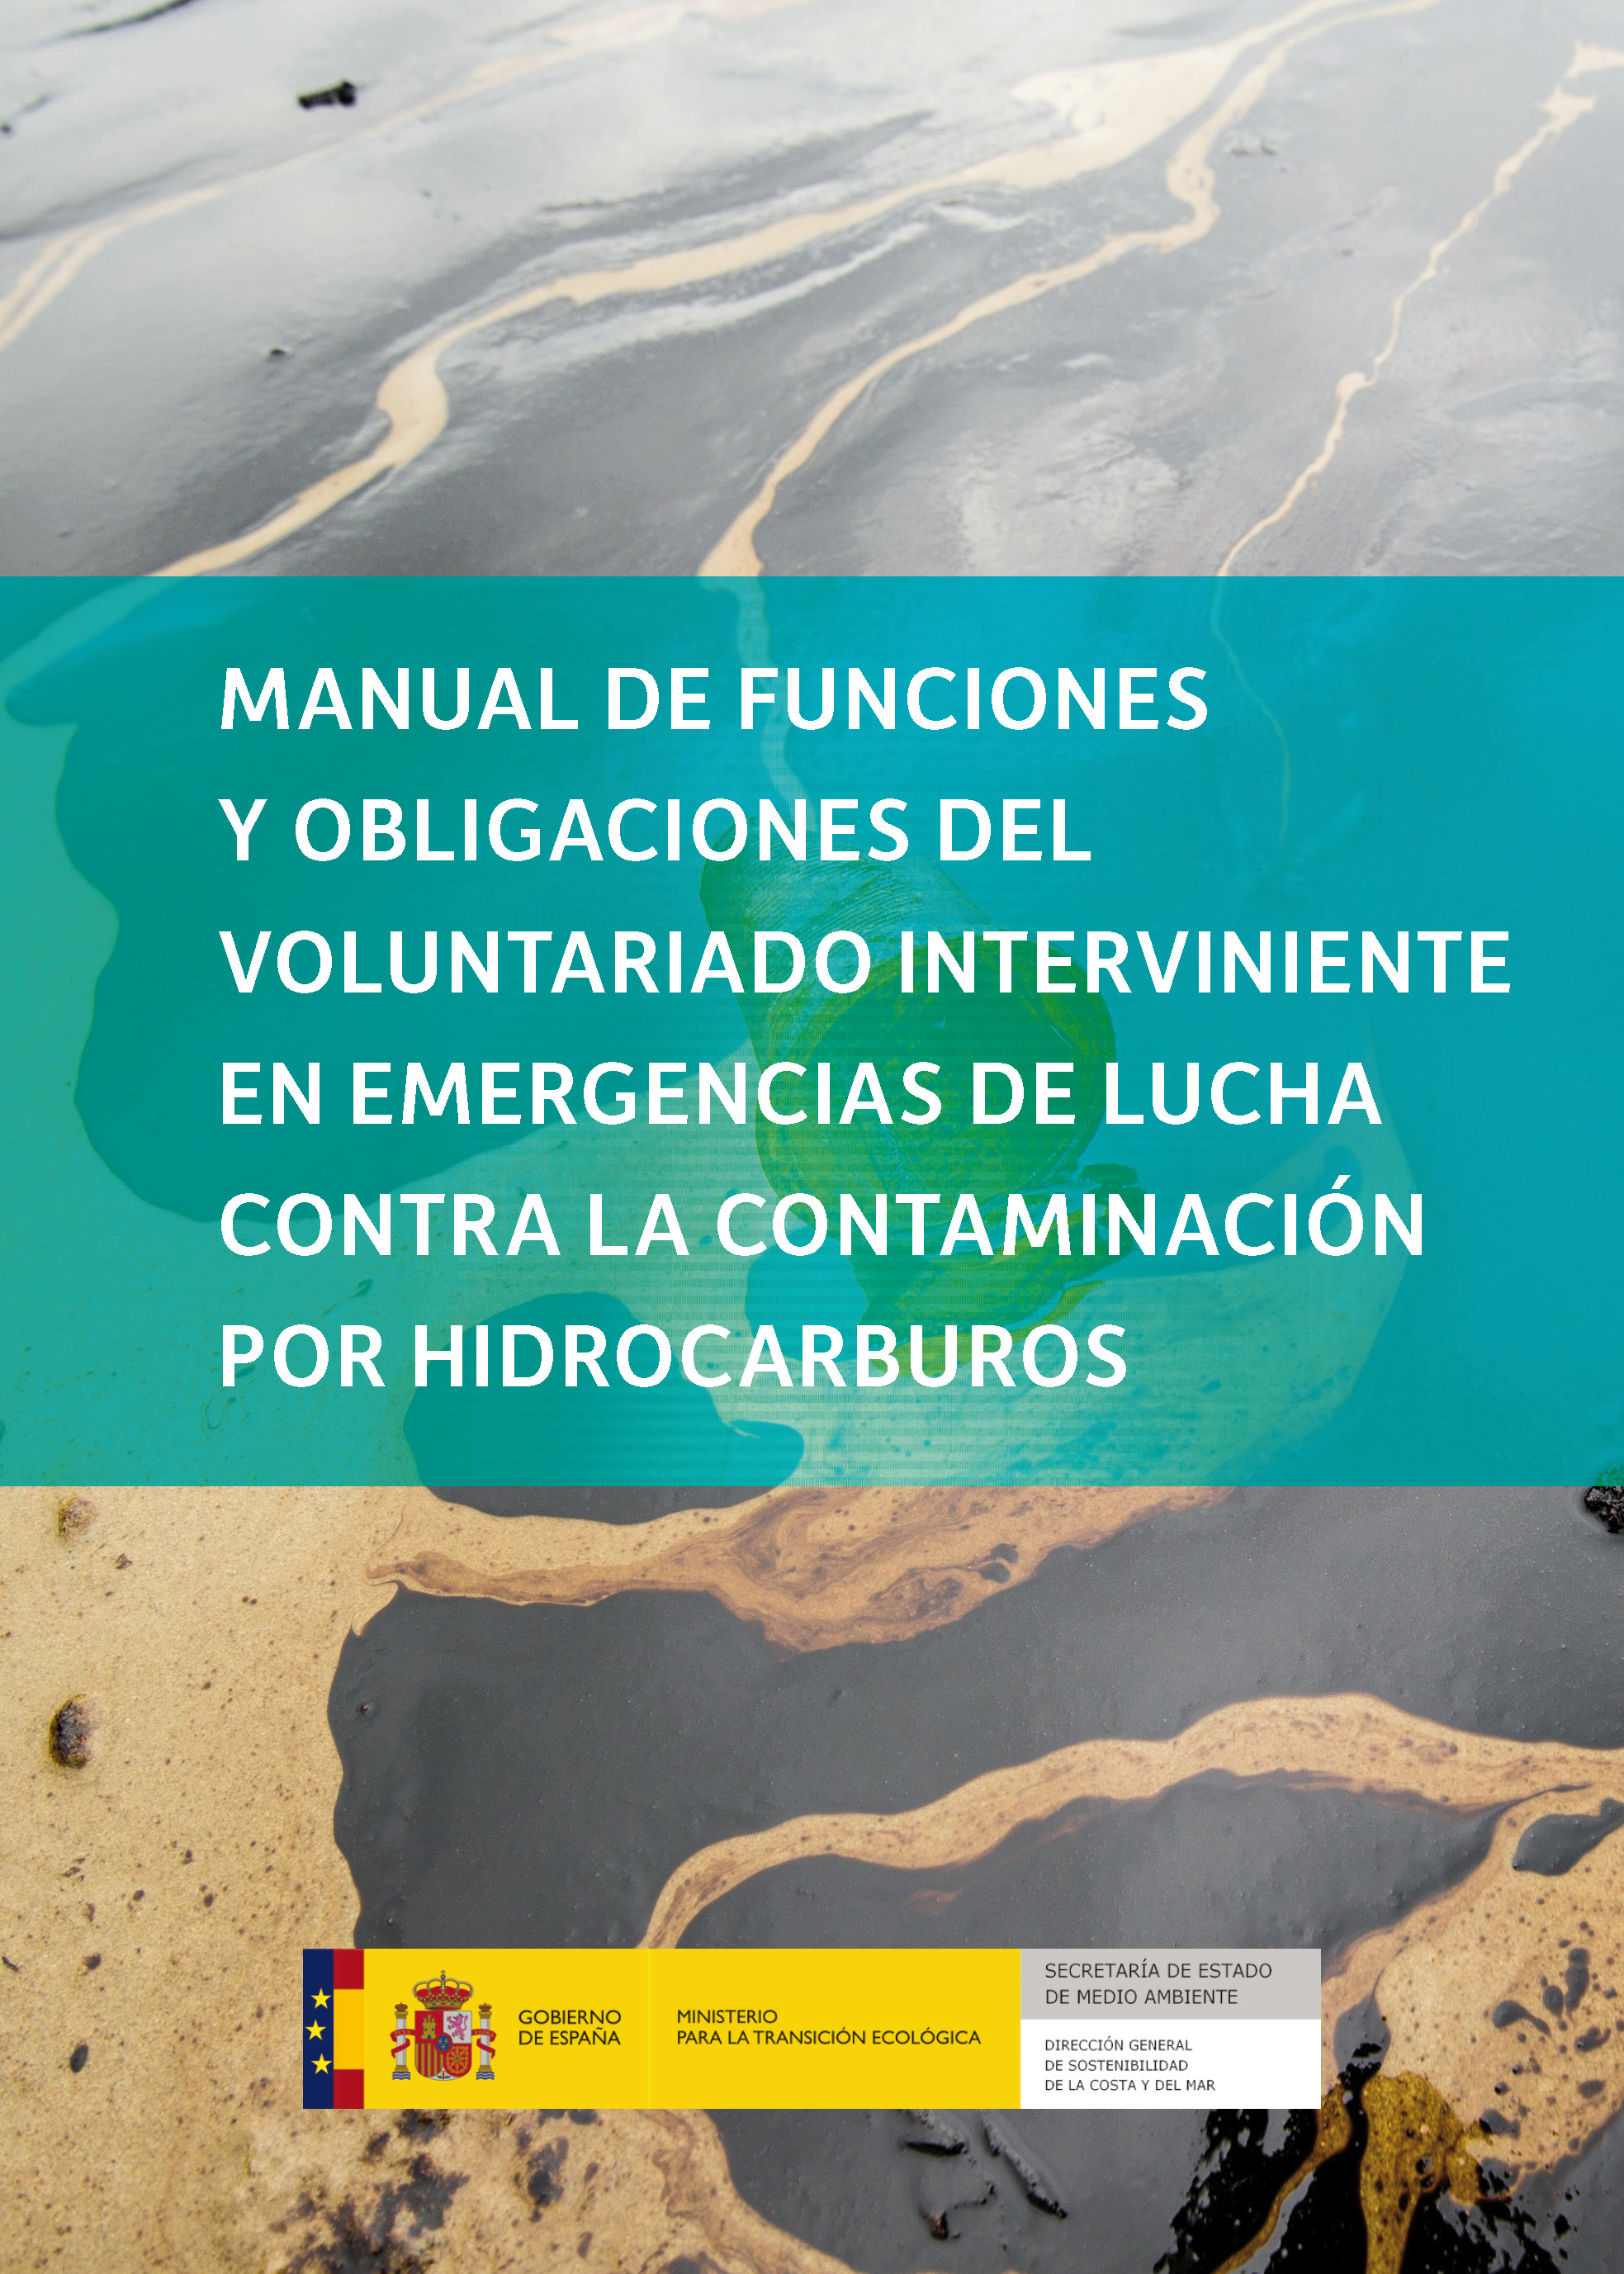 Manual de funciones y obligaciones del voluntariado interviniente en emergencias de lucha contra la contaminación por hidrocarburos